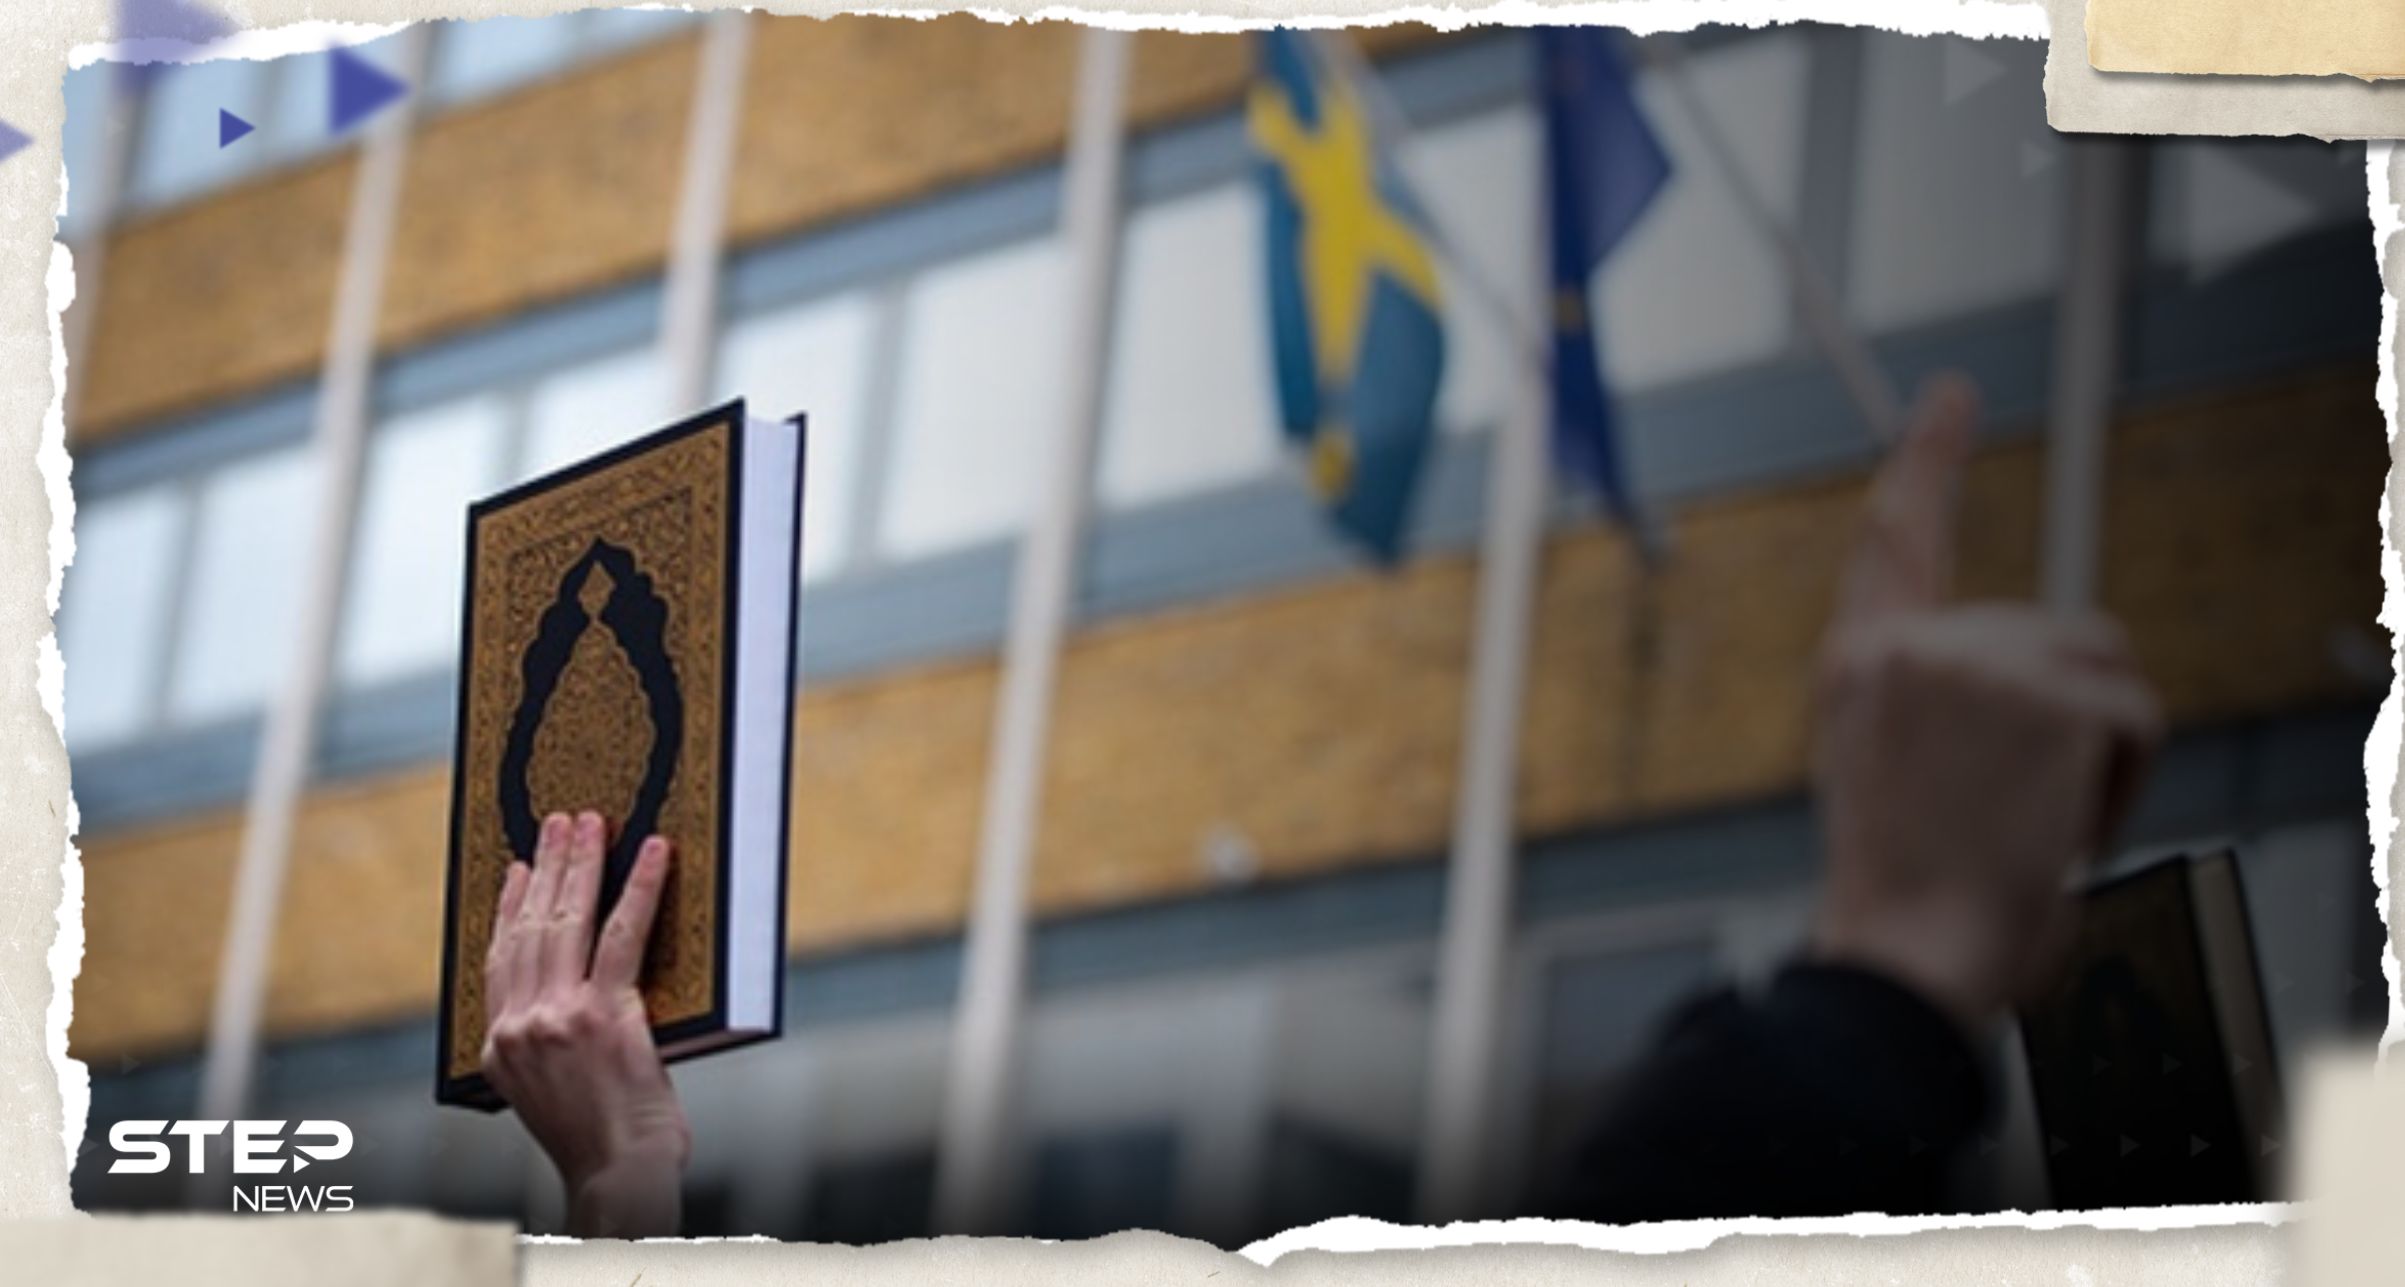 السويد تدرس وضع اجراءات جديدة تتعلق بالكتب المقدسة.. وتقرير يكشف التفاصيل